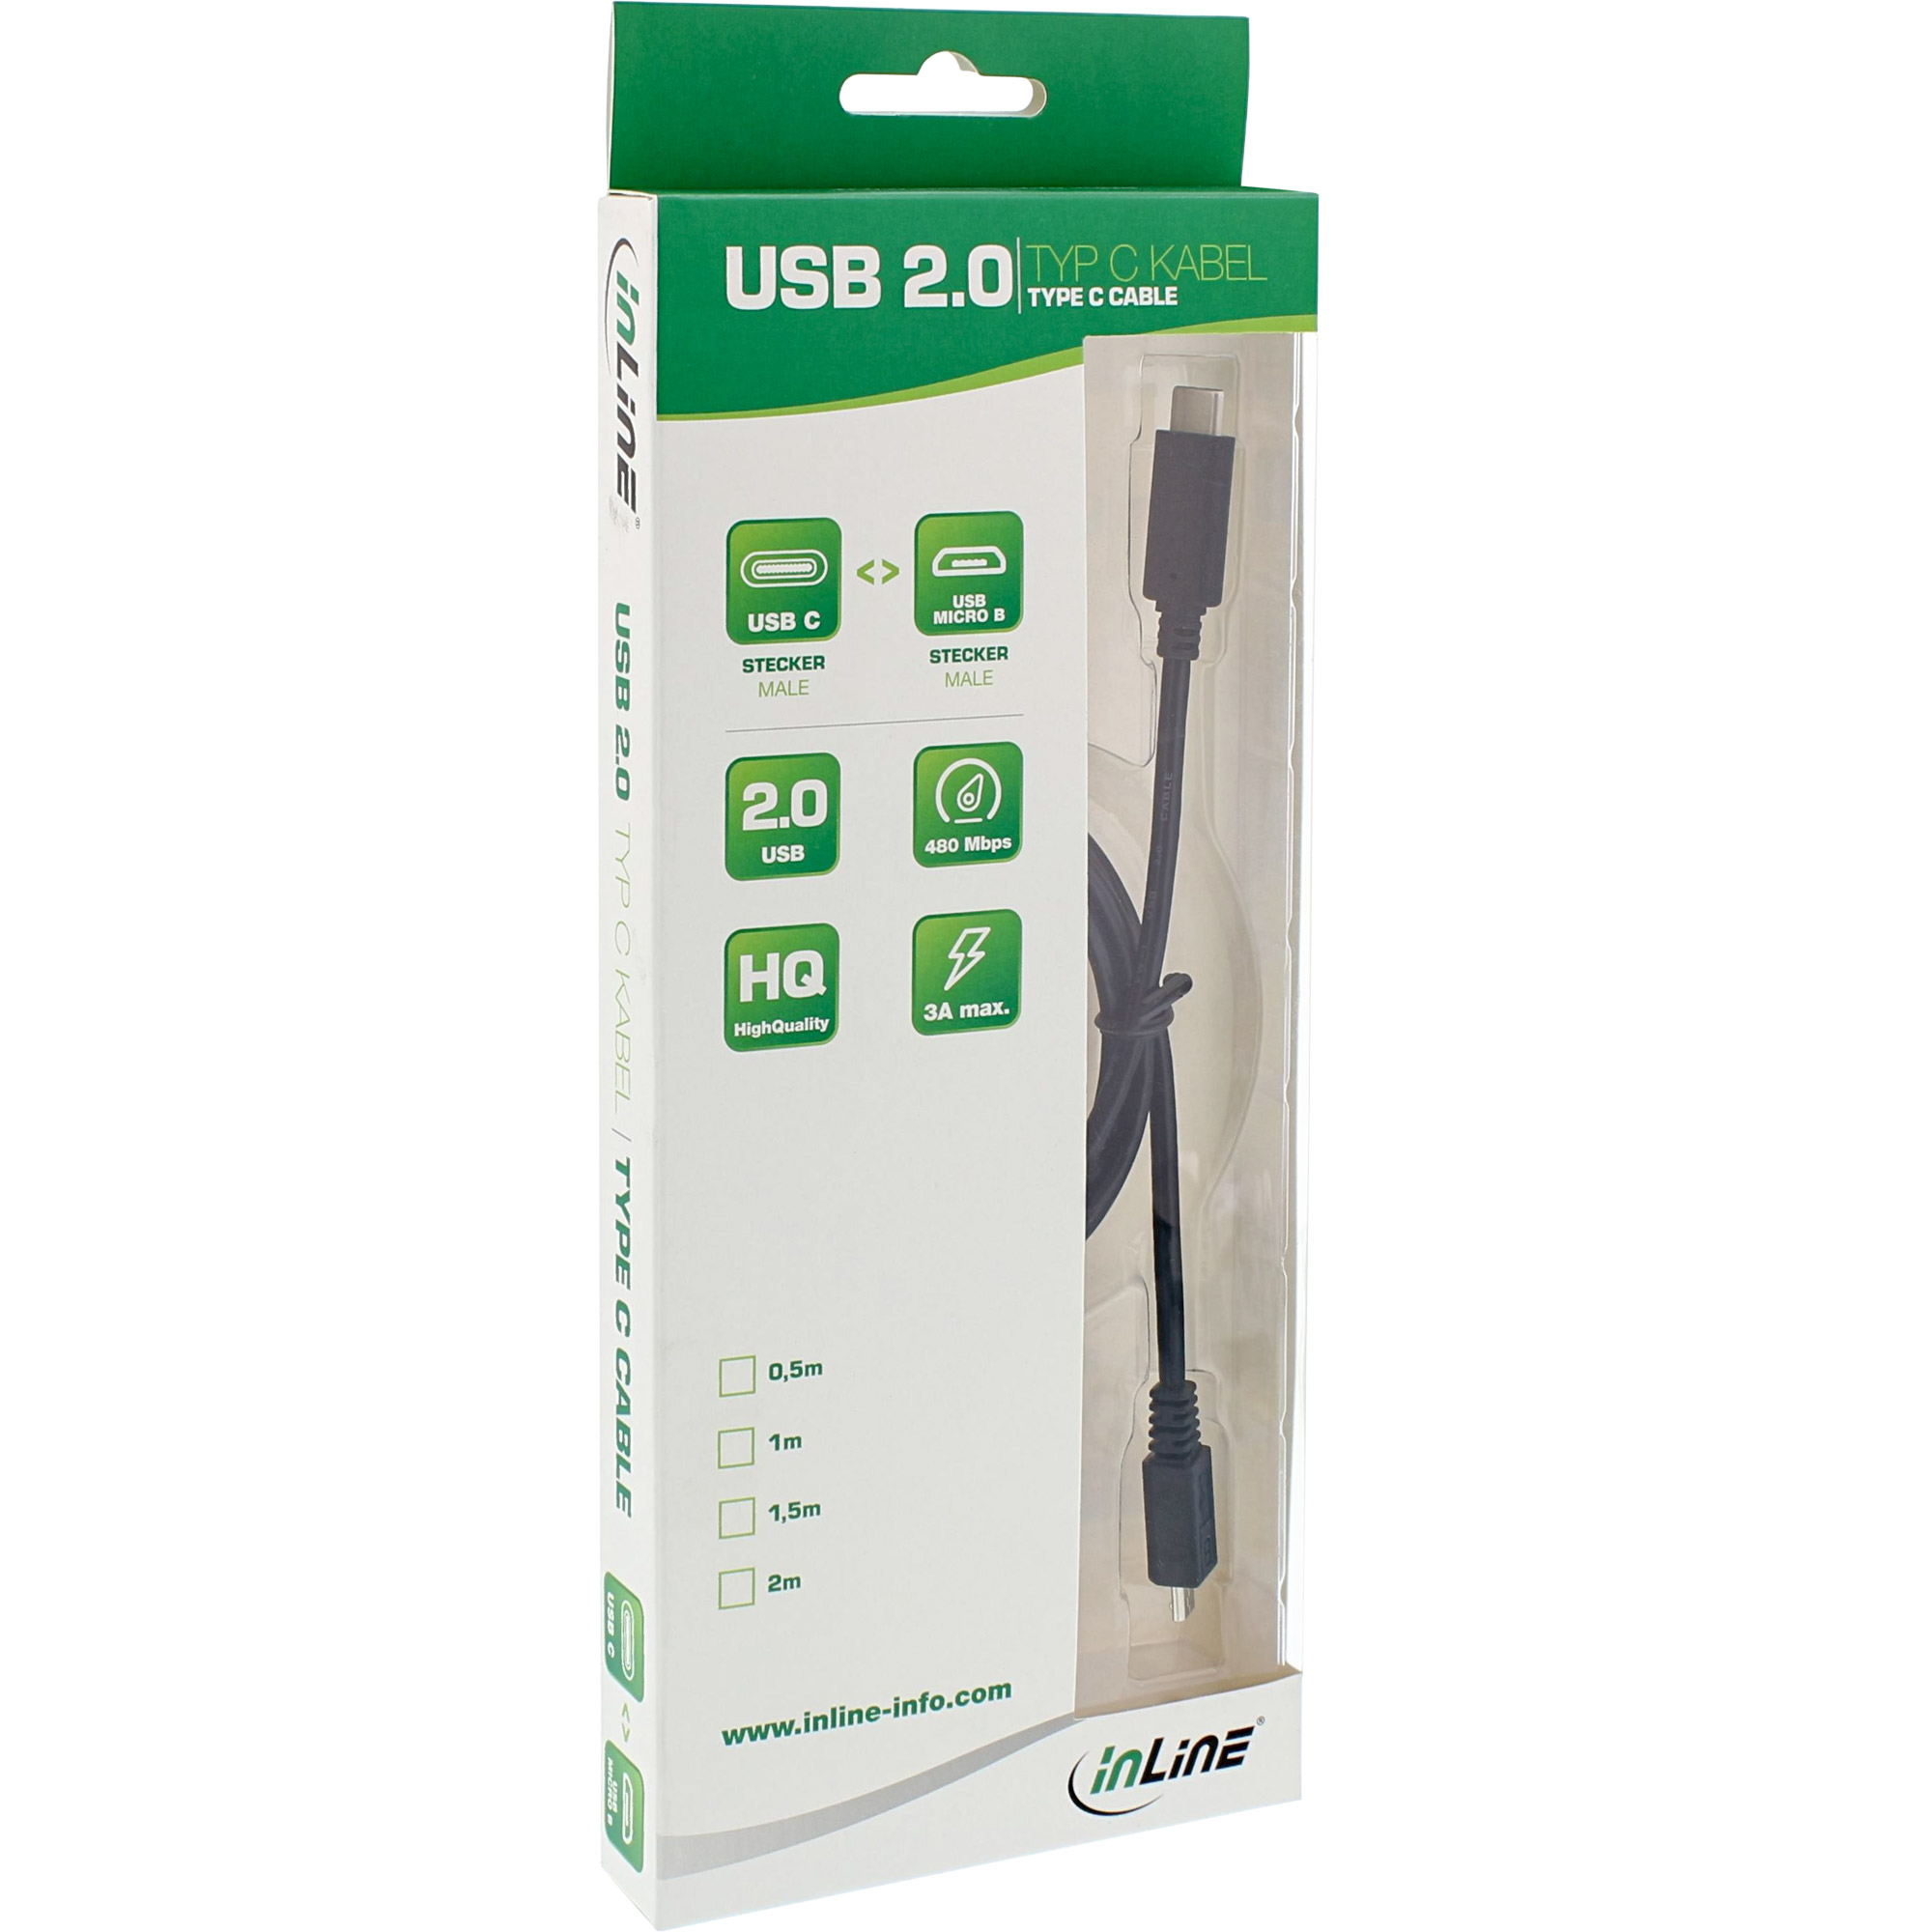 InLine® USB 2.0 Kabel, Typ C Stecker an Micro-B Stecker, schwarz, 1m